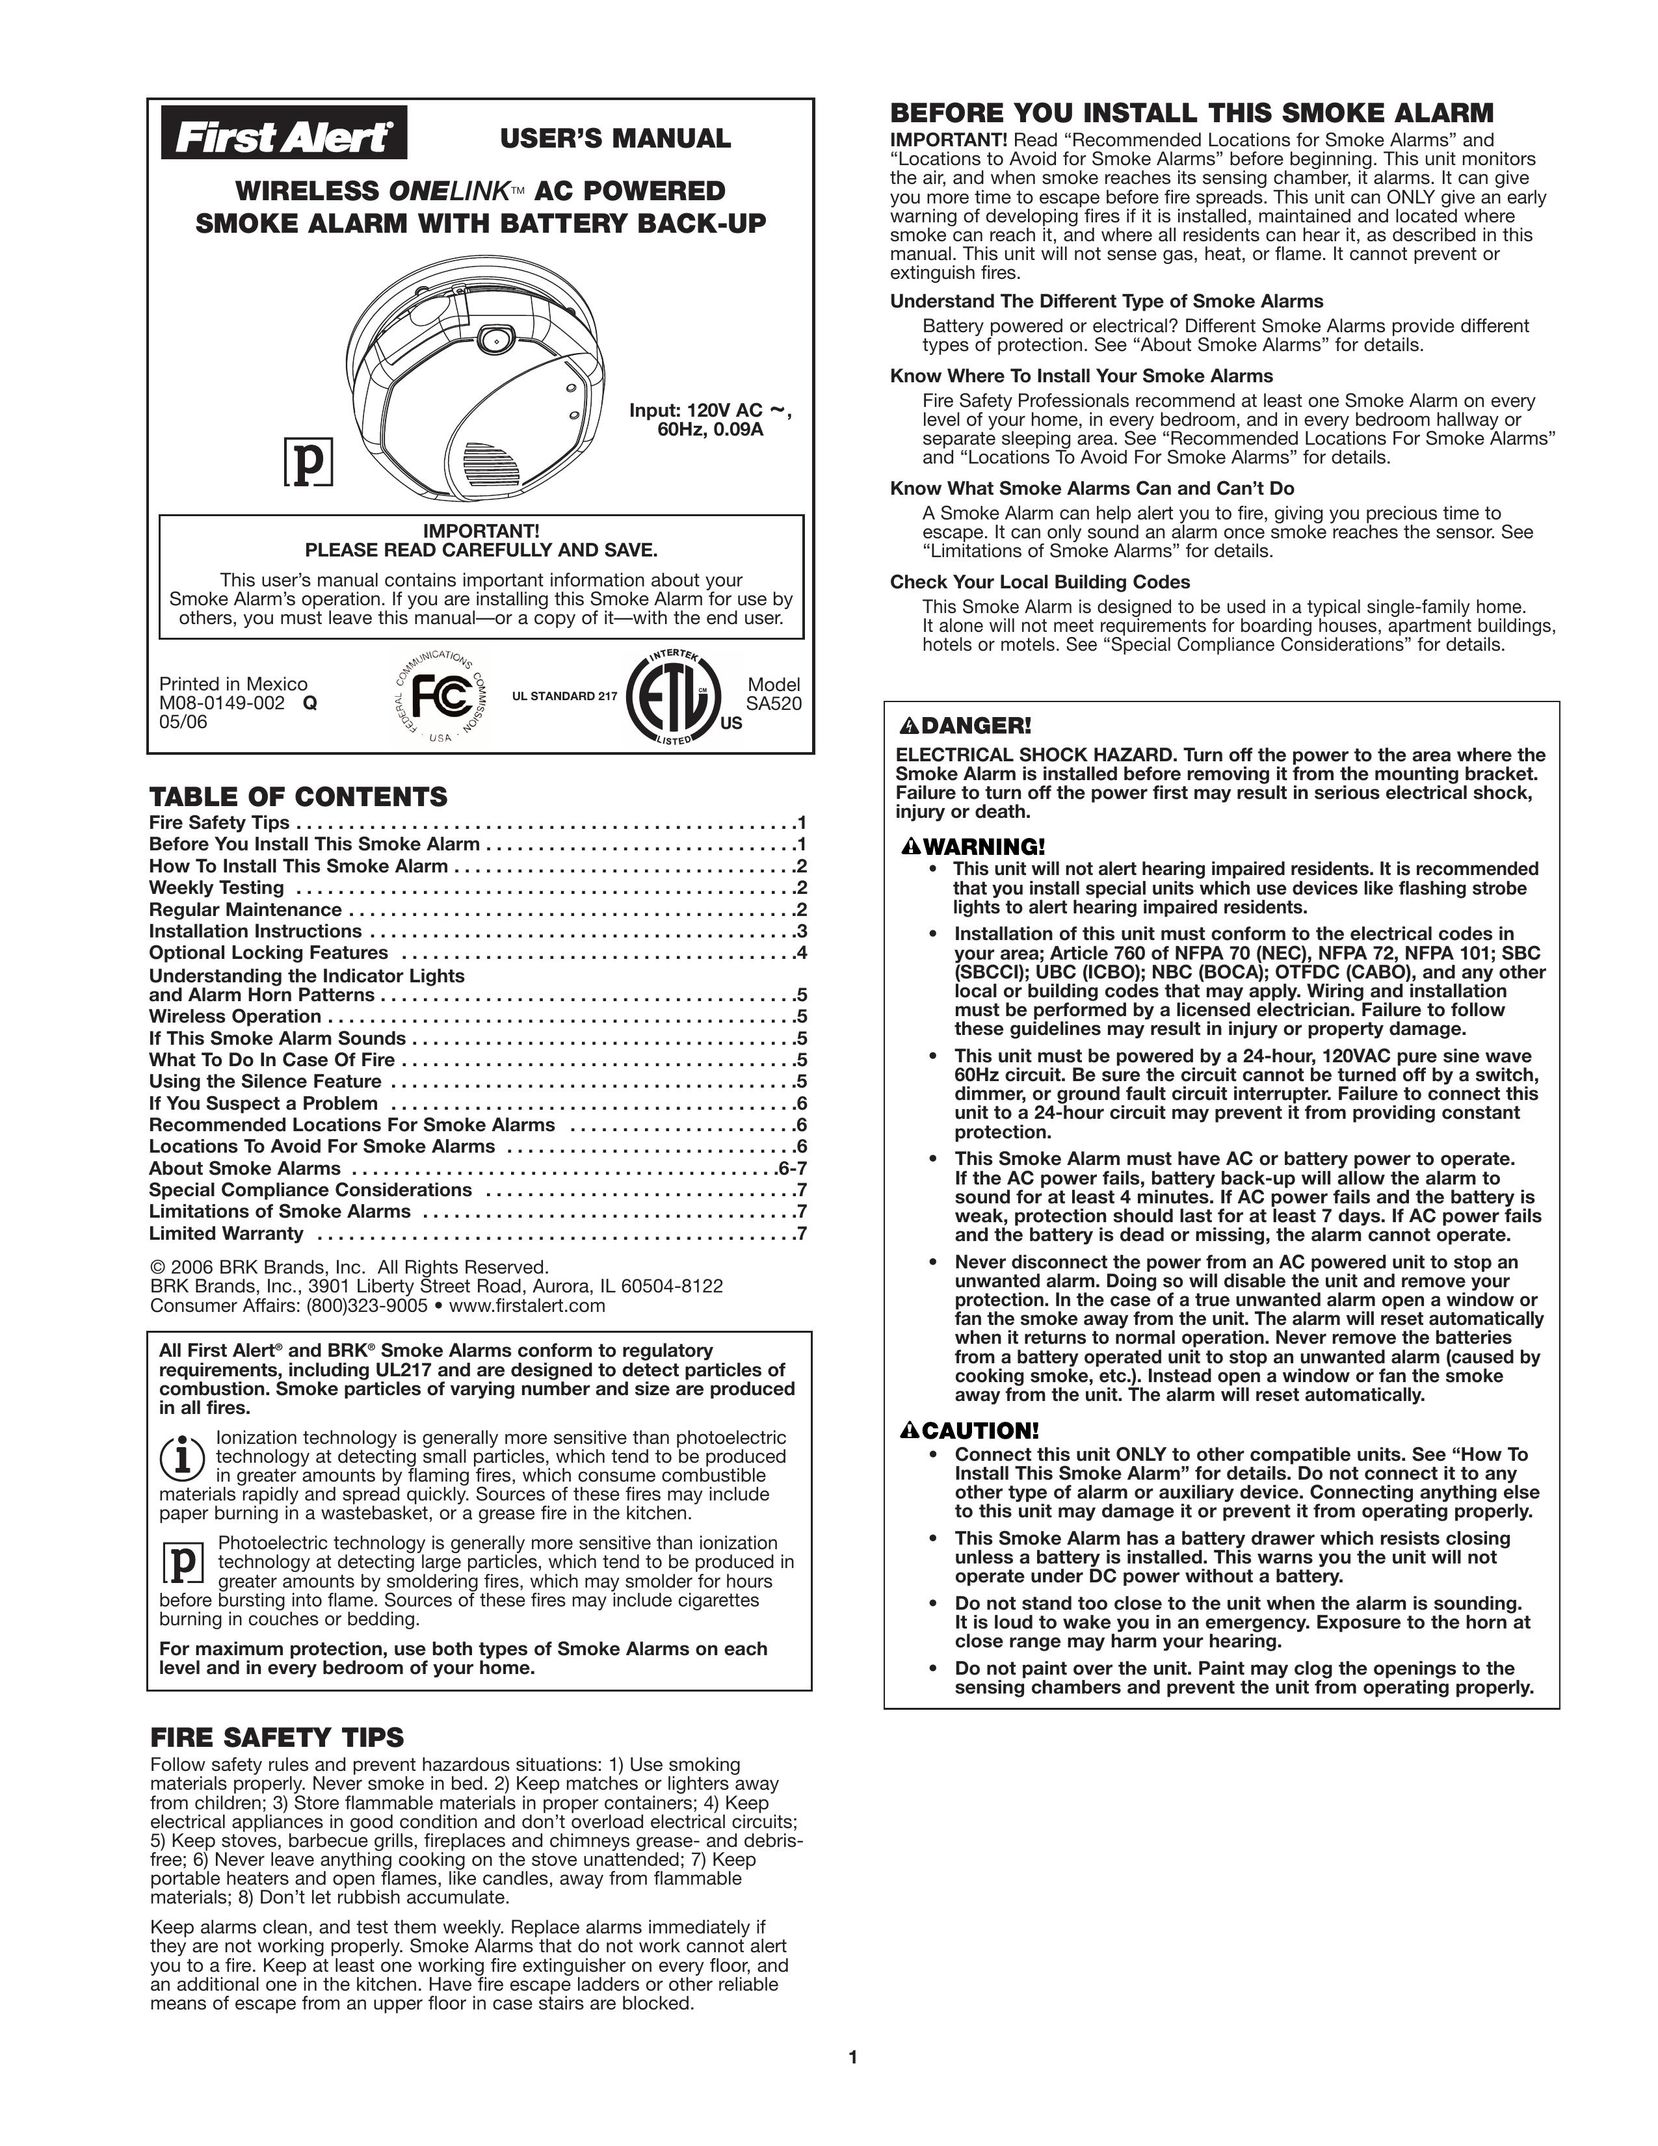 First Alert SA520 Smoke Alarm User Manual